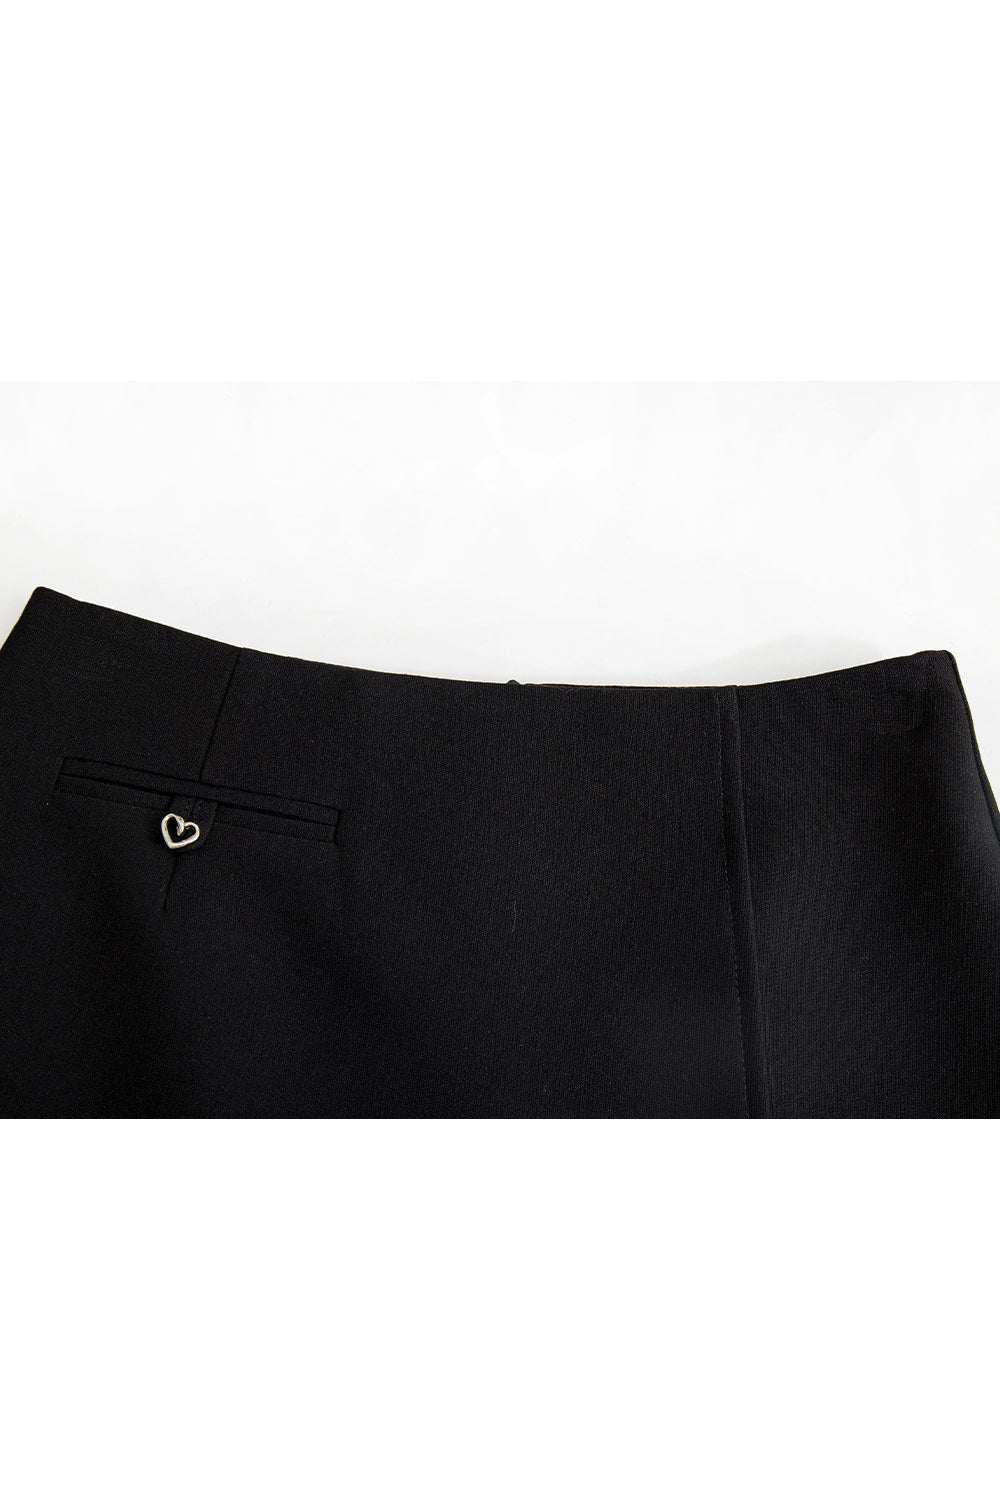 Skirt Mini Disesuaikan Wanita dengan Perincian Poket Depan